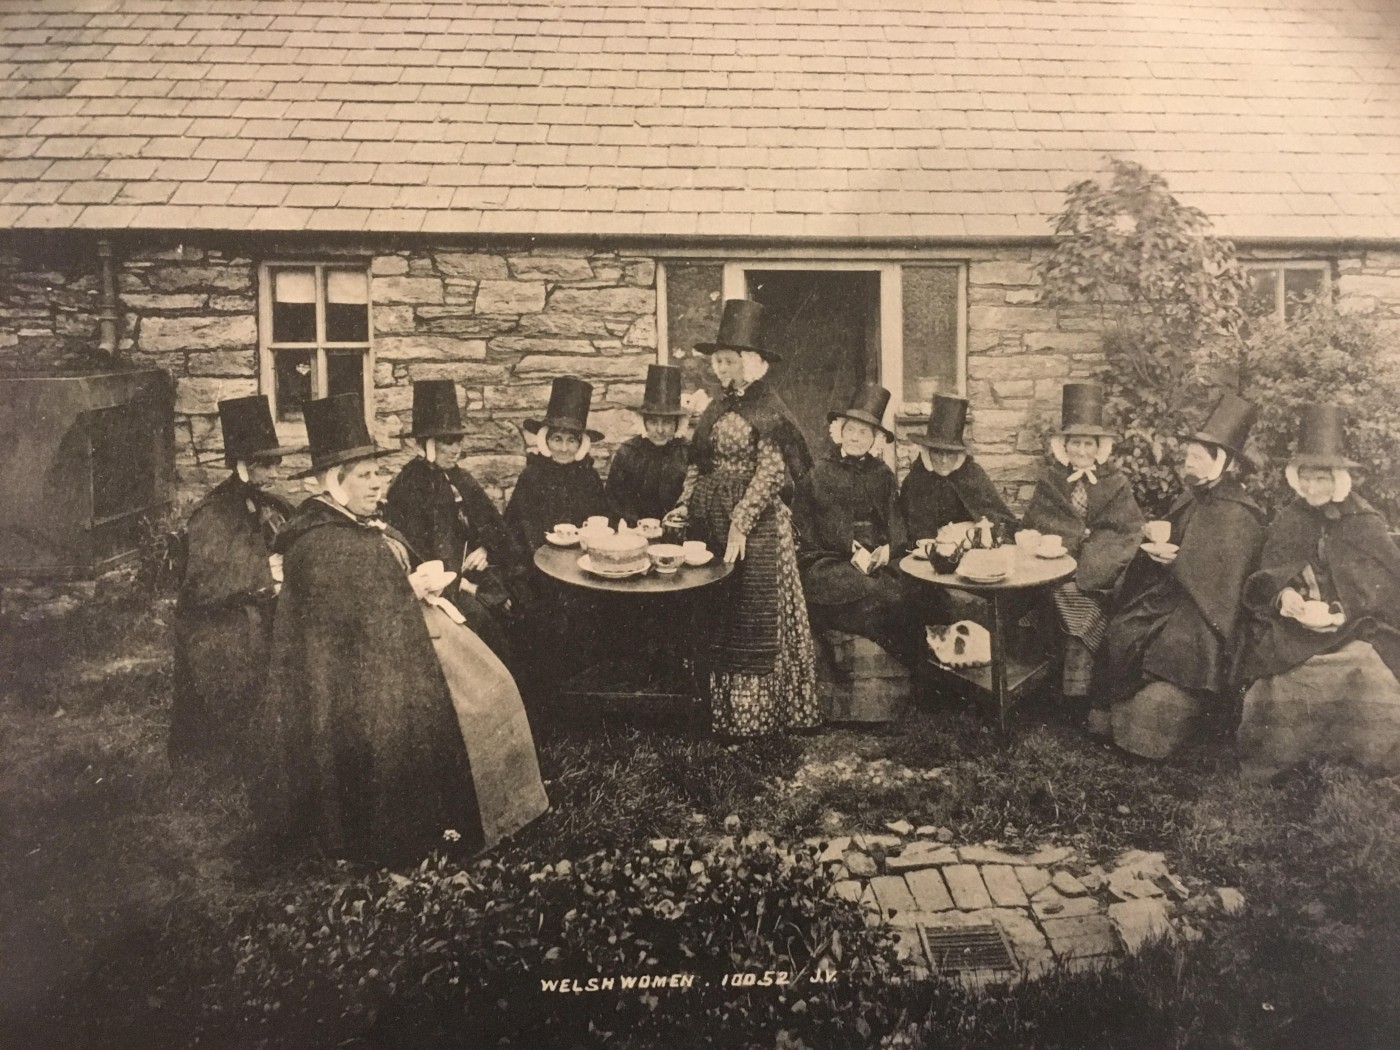 図4:お茶を持っている衣装でウェールズの女性のはがき。 1900年頃 Y Lanfa Powysland博物館の画像提供。 